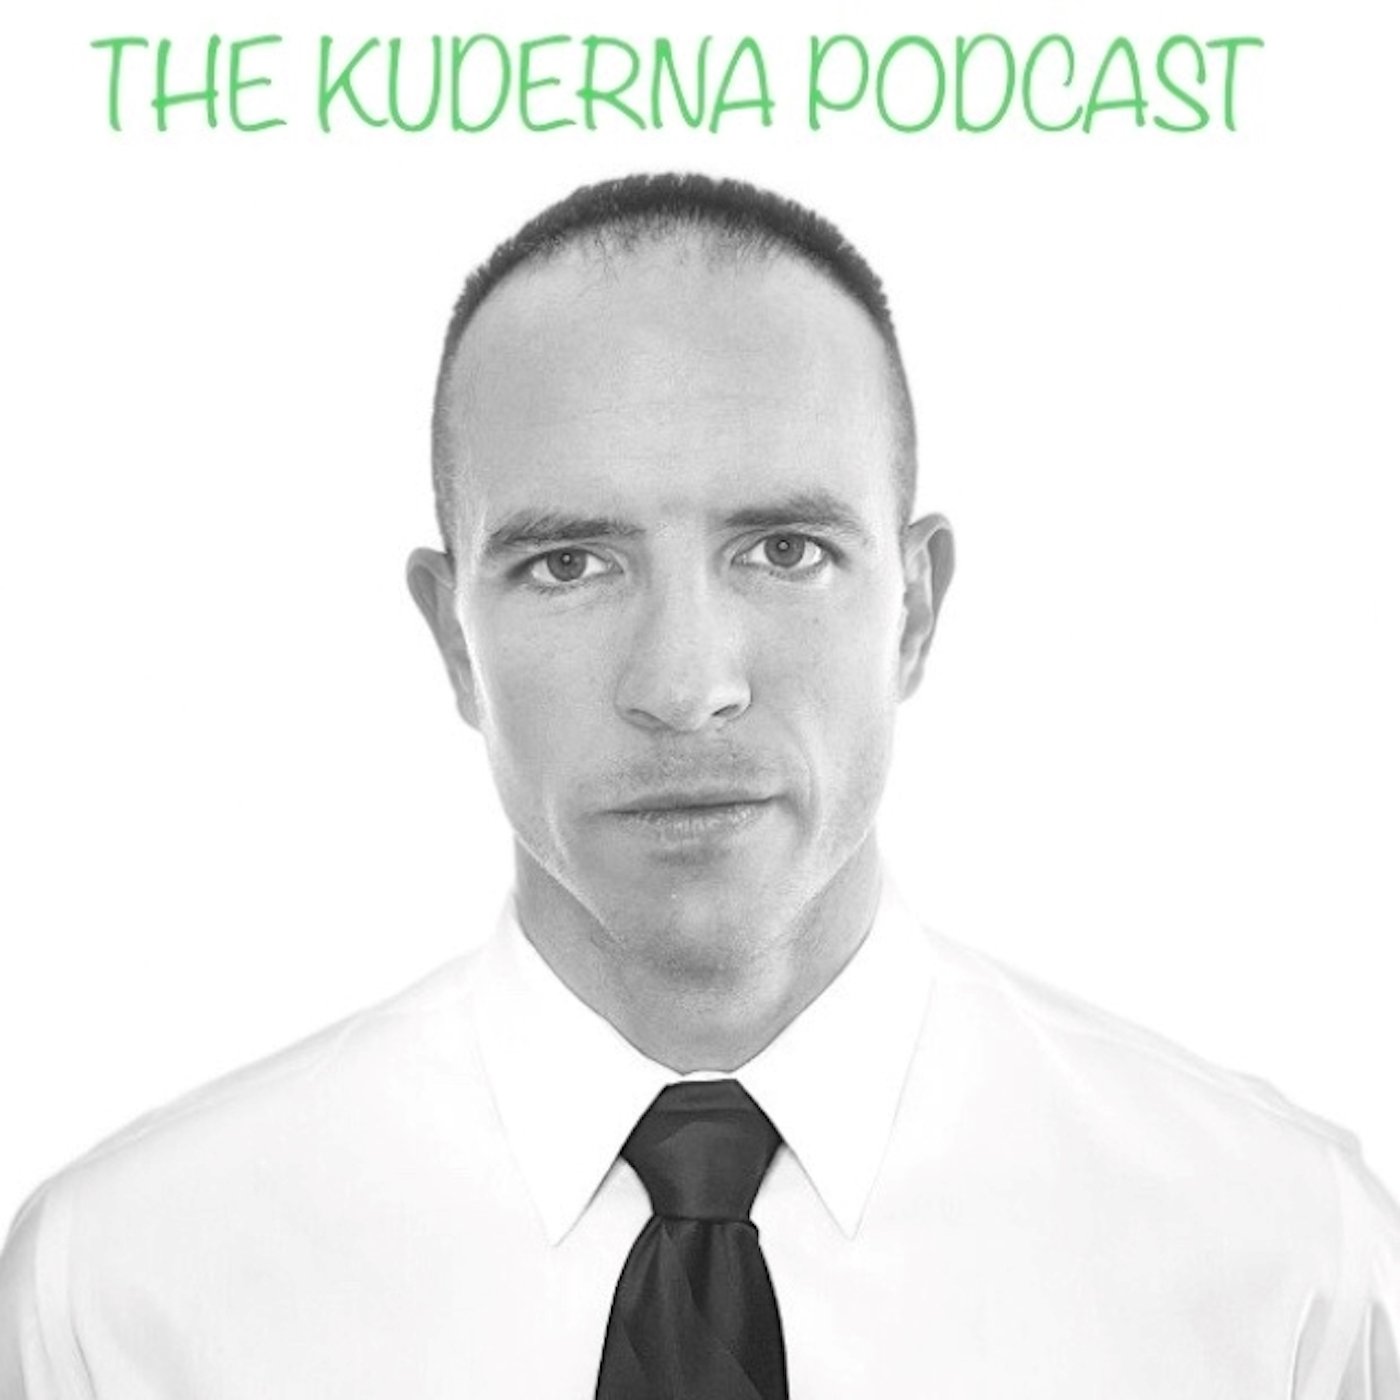 Profile artwork for The Kuderna Podcast